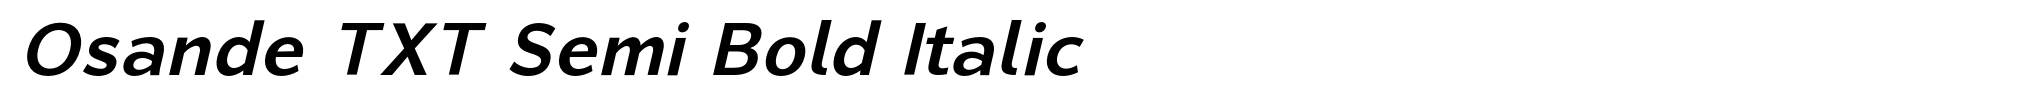 Osande TXT Semi Bold Italic image